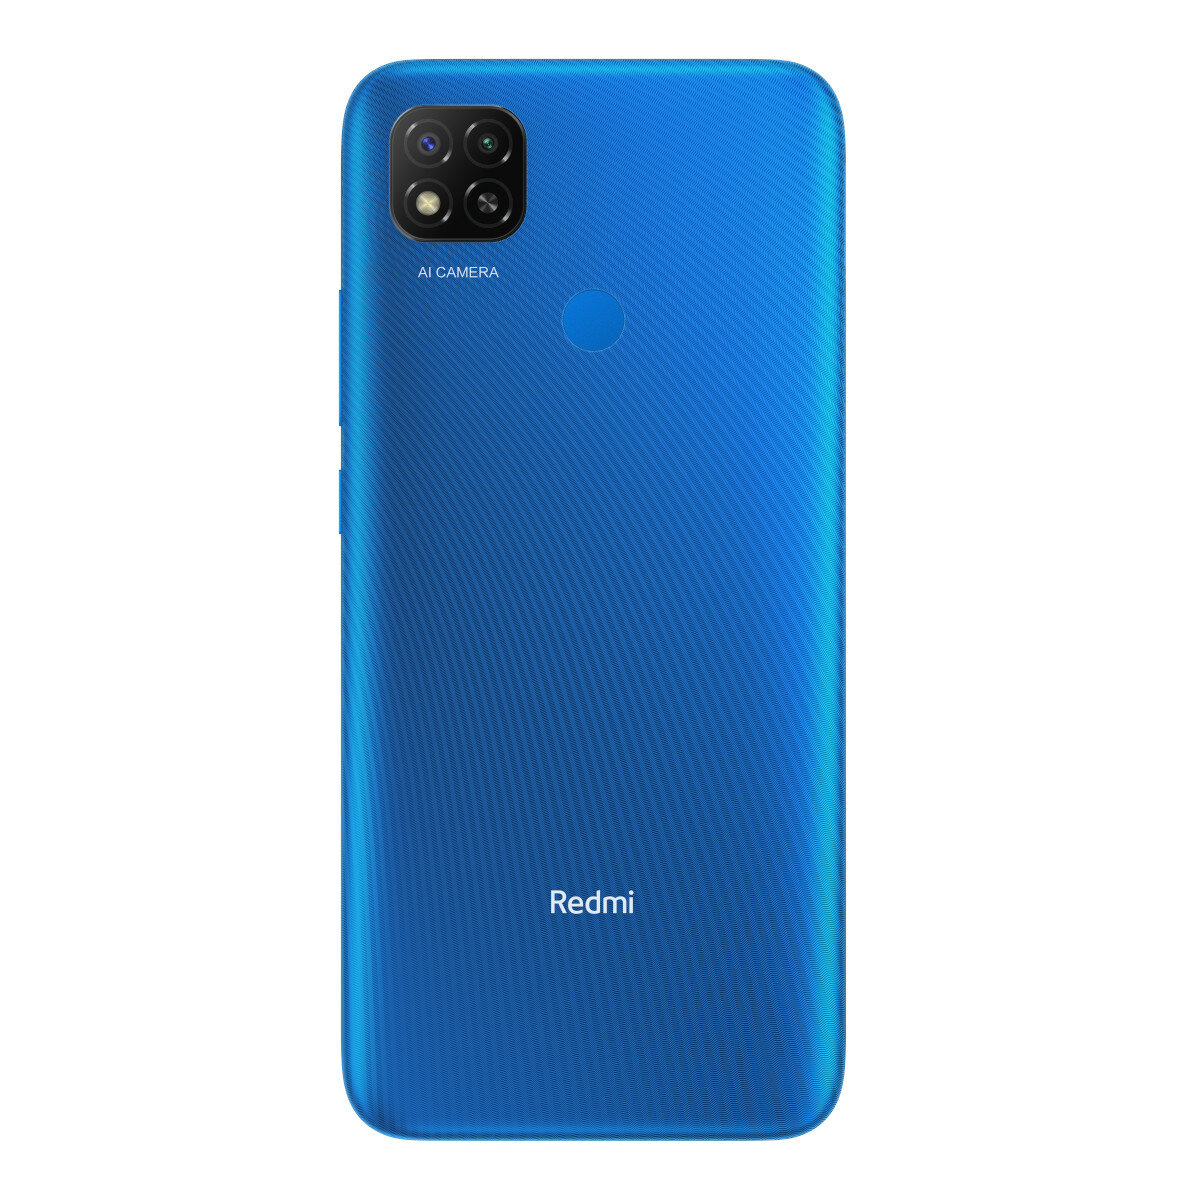 Smartfon Redmi 9C 32GB niebieski zmierzch pokazany tył telefonu